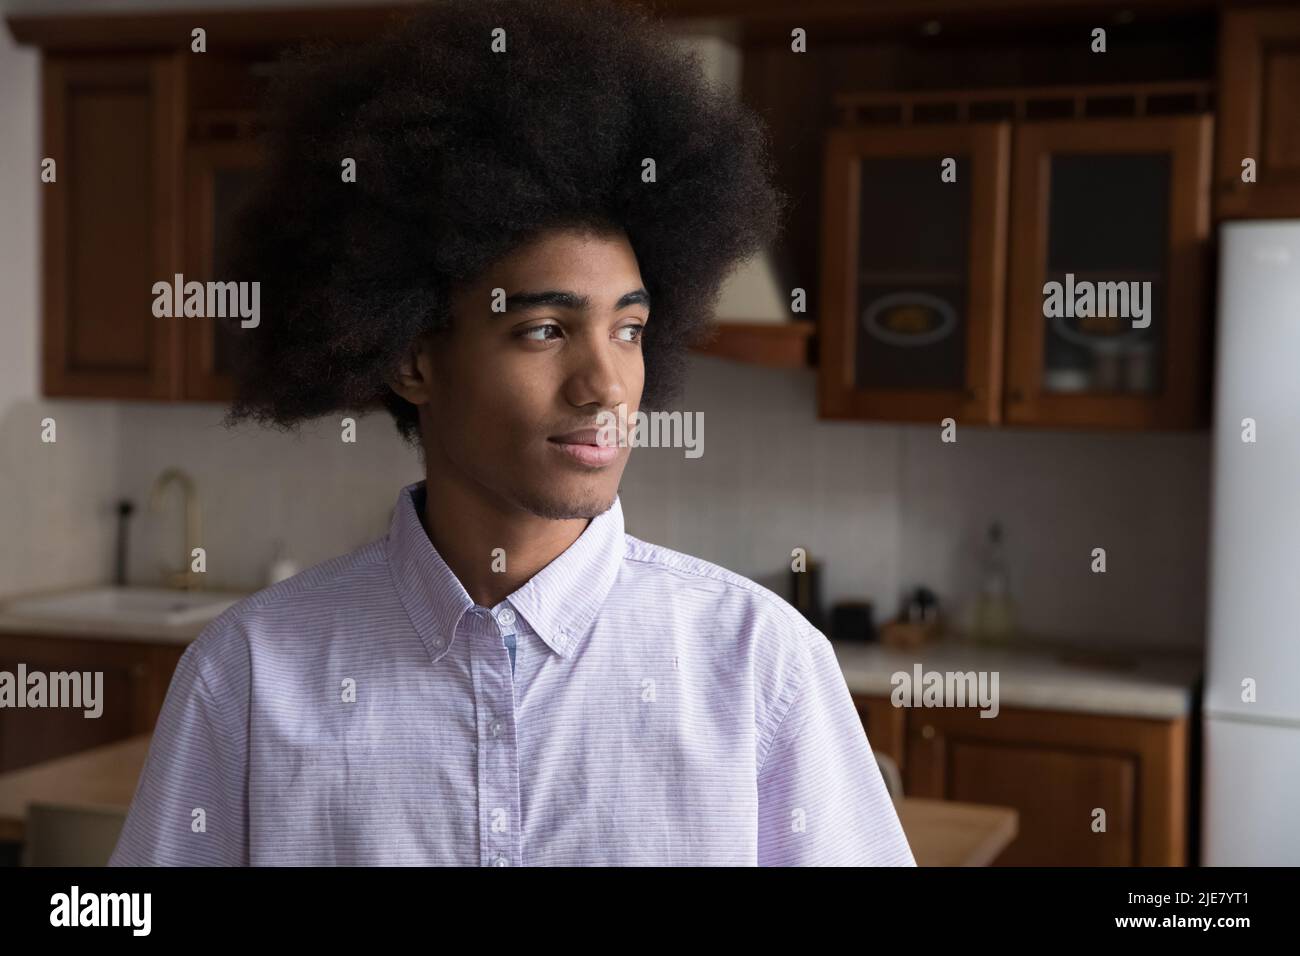 Ernst nachdenklicher afrikanischer Kerl, der in der heimischen Küche steht und beiseite starrt Stockfoto